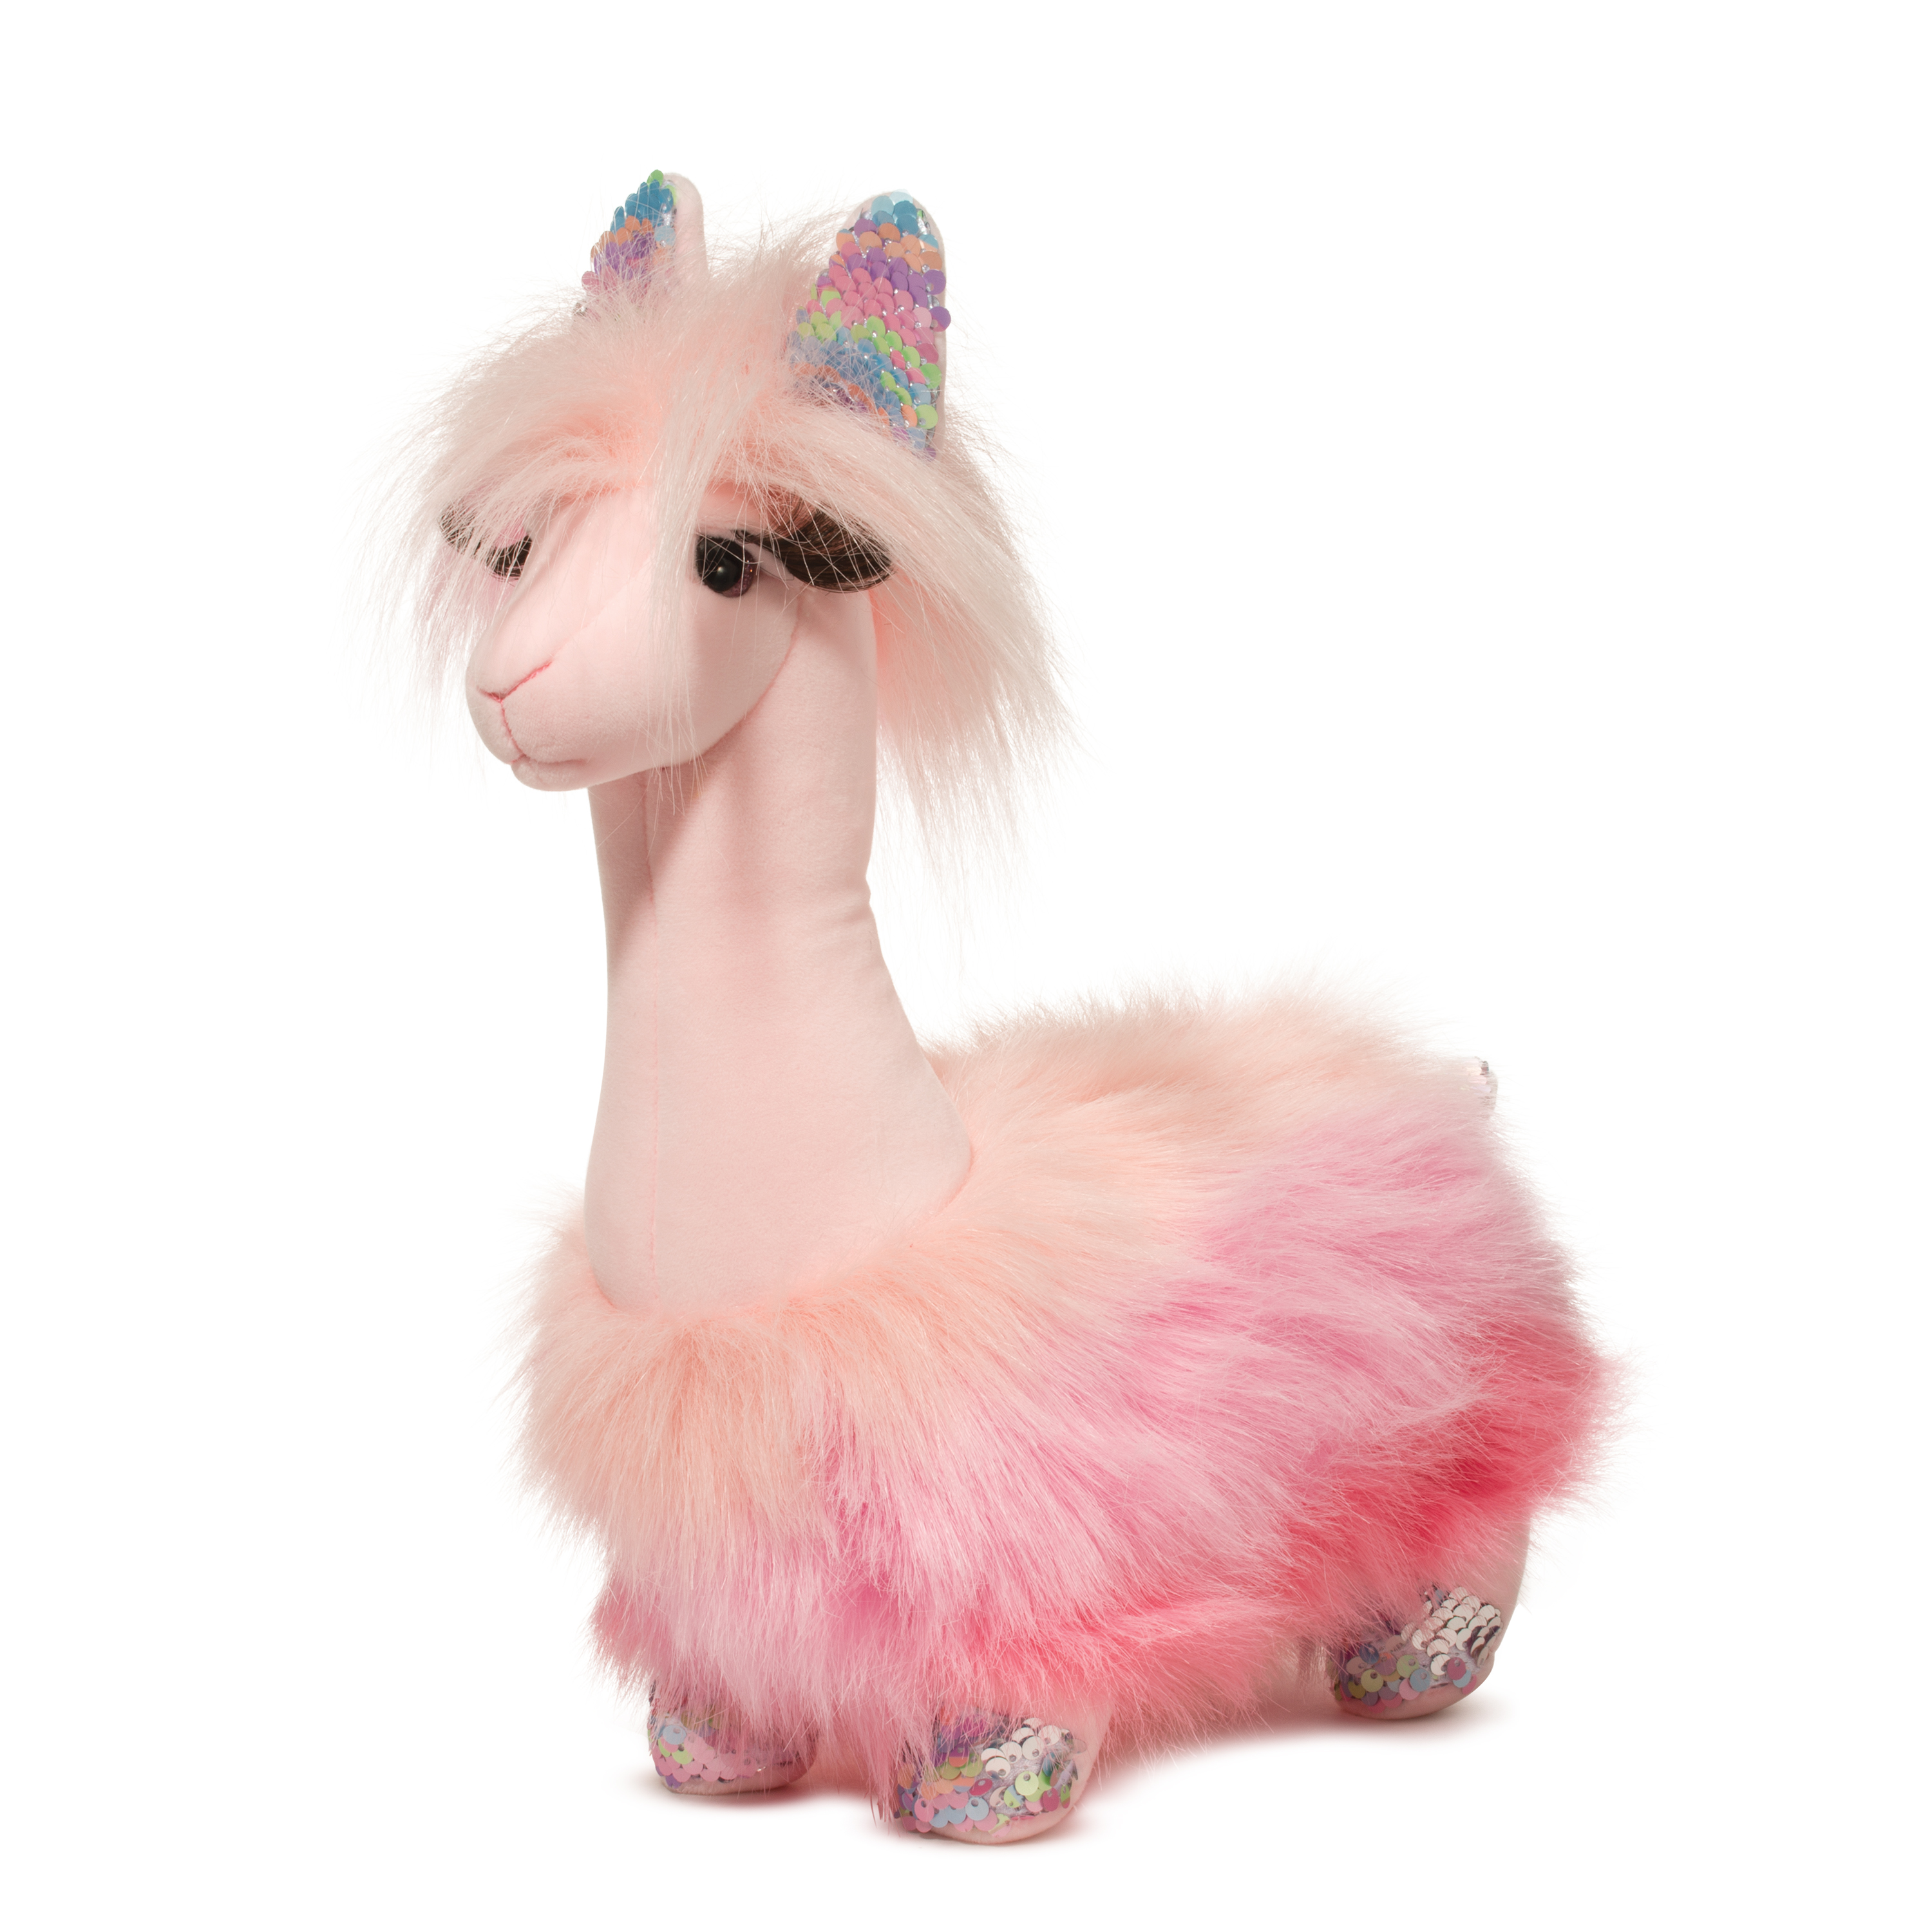 pink stuffed llama